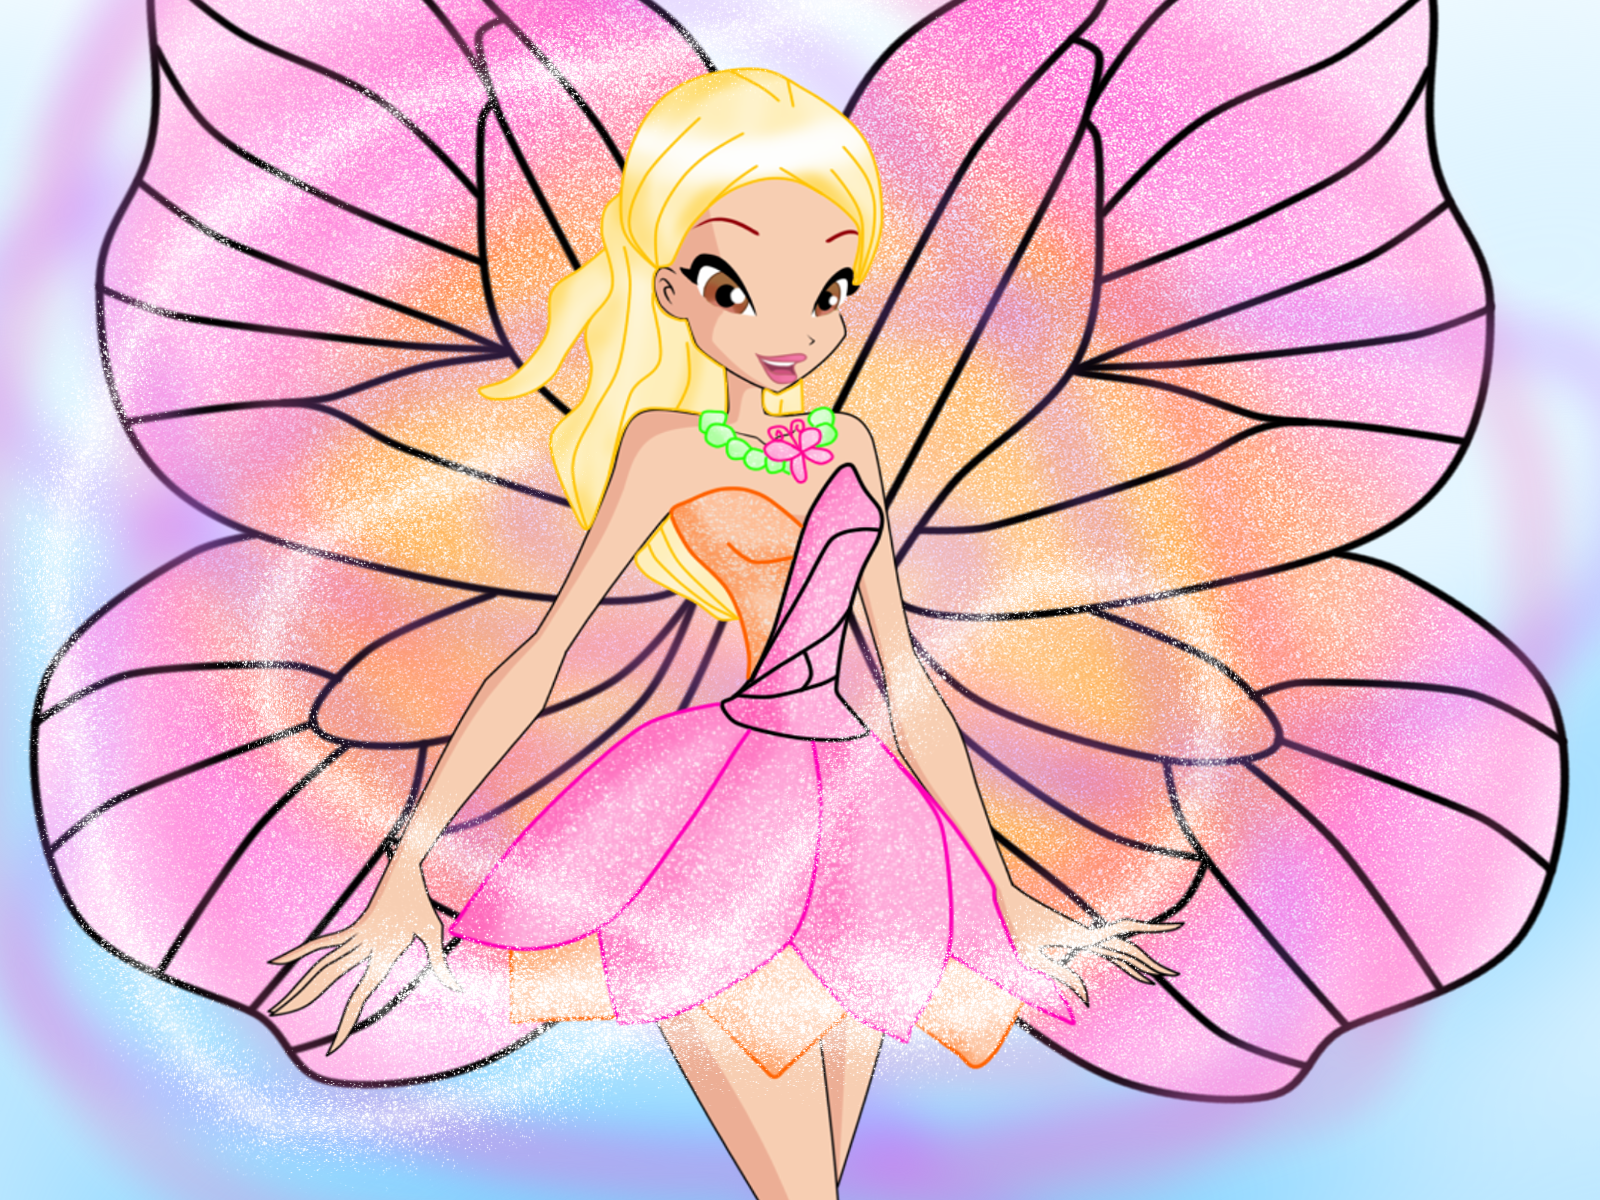 Waarschijnlijk gezond verstand Samenhangend Barbie - Mariposa in Winx Style by RavenVillanuevaT2P on DeviantArt